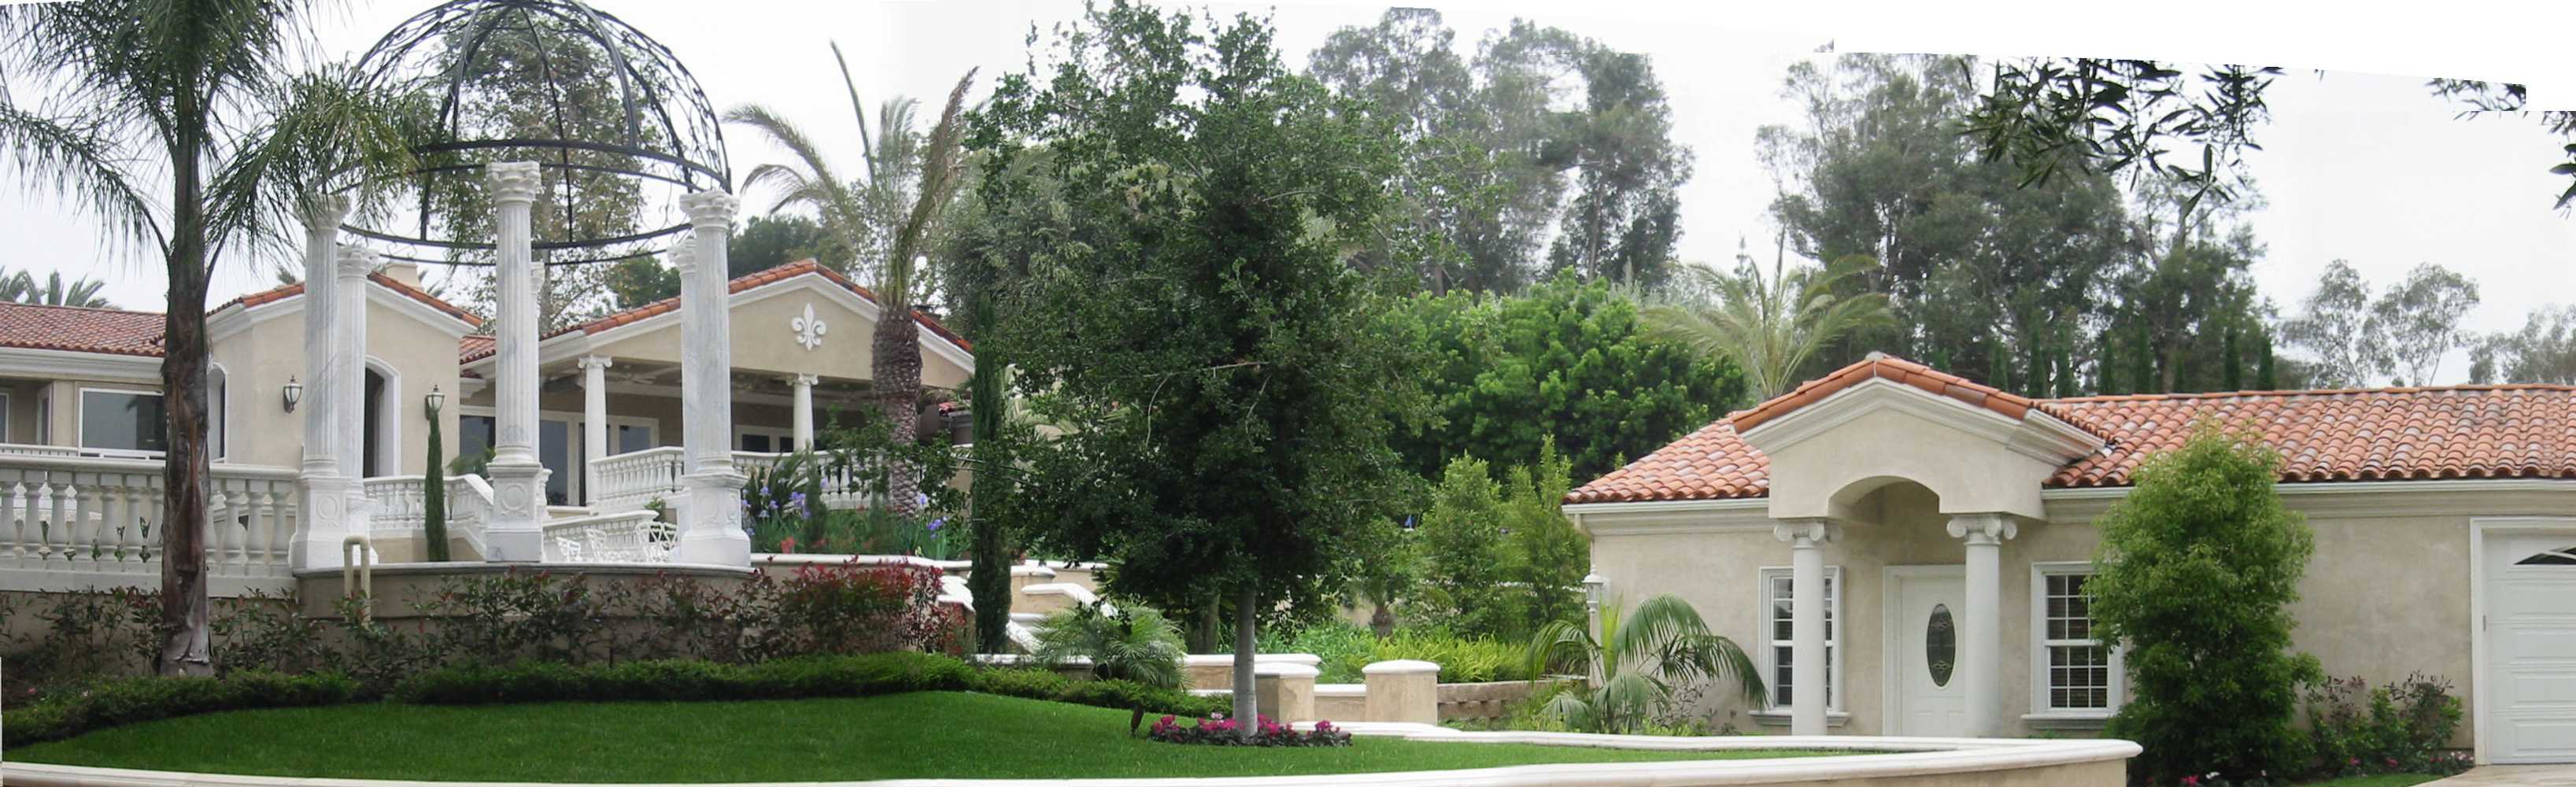 Landscape Anaheim Hills